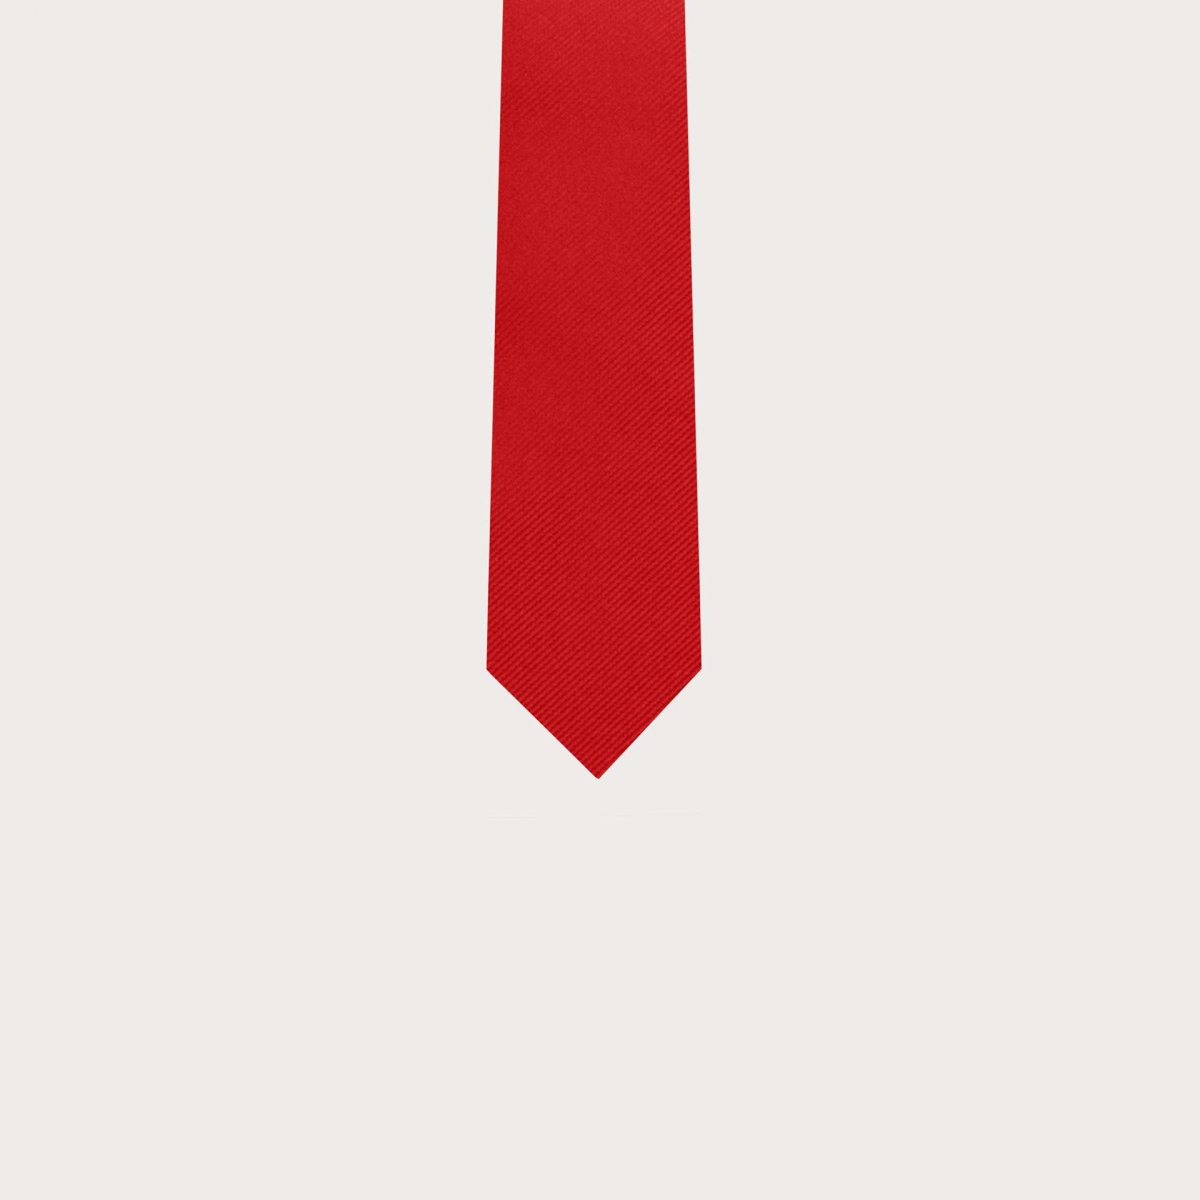 Cravatta bambino rossa in seta